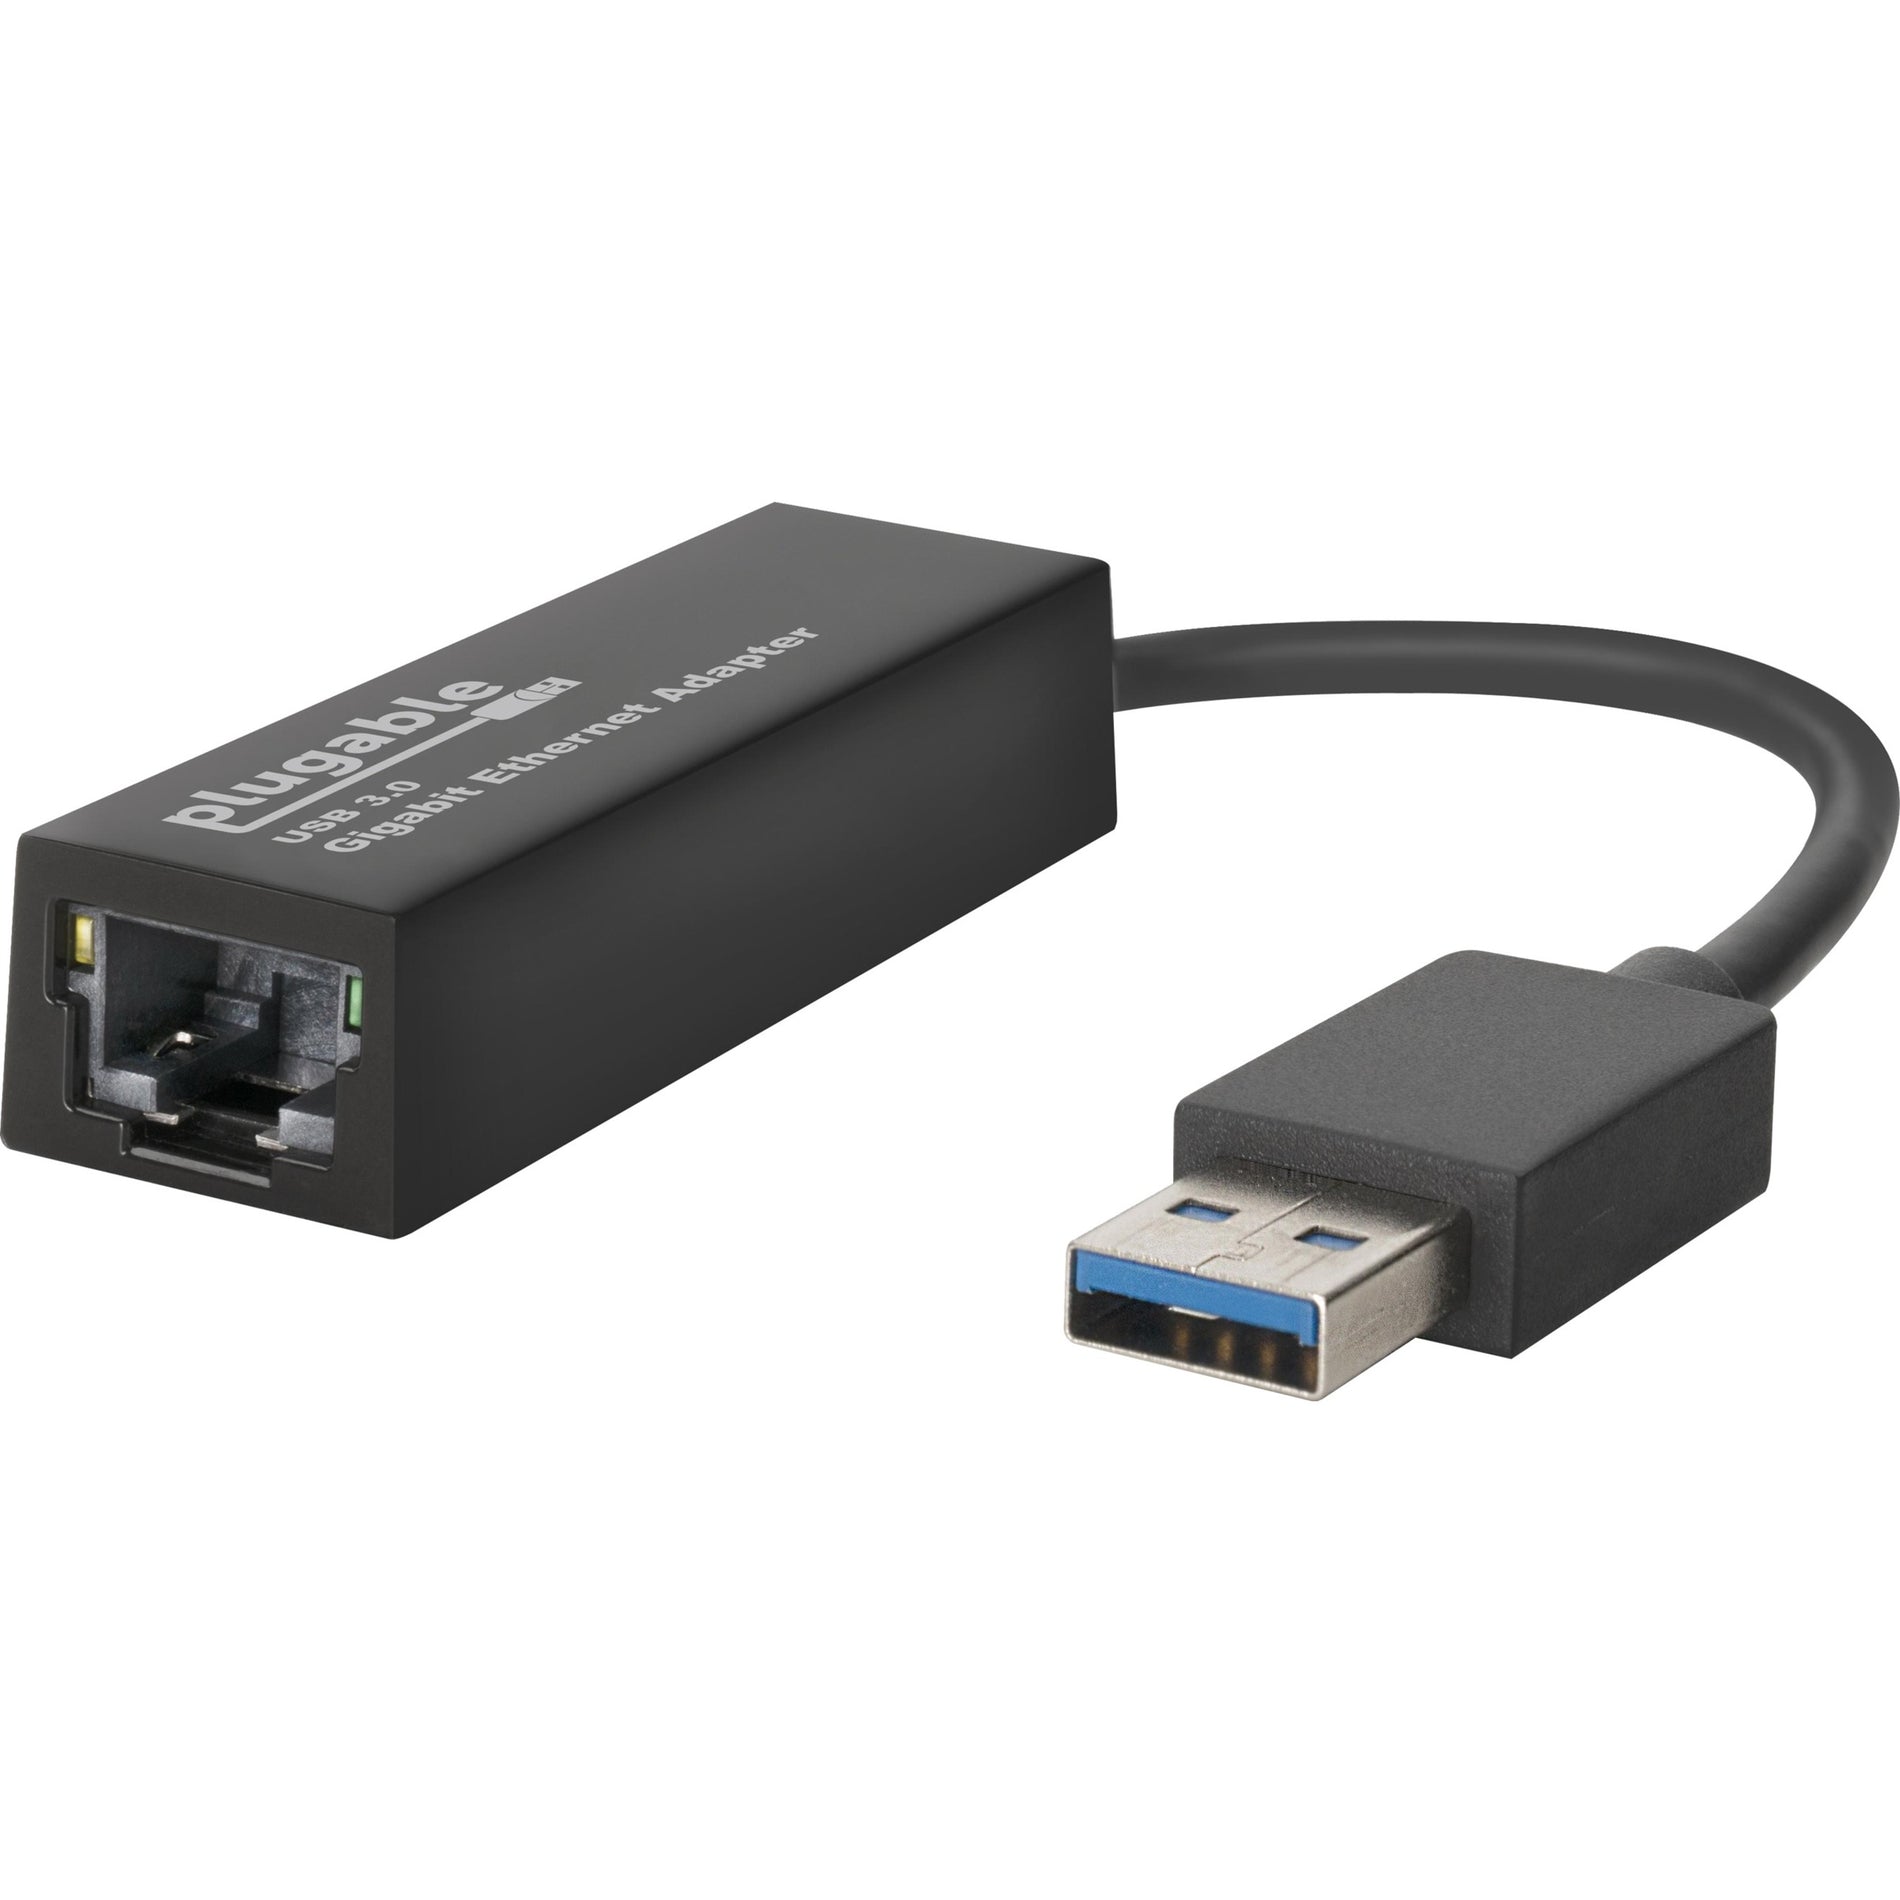 Adaptador de USB a Ethernet Plugable USB3-E1000 USB 3.0 a Ethernet Gigabit Transferencia de Datos de Alta Velocidad. Marca: Plugable.